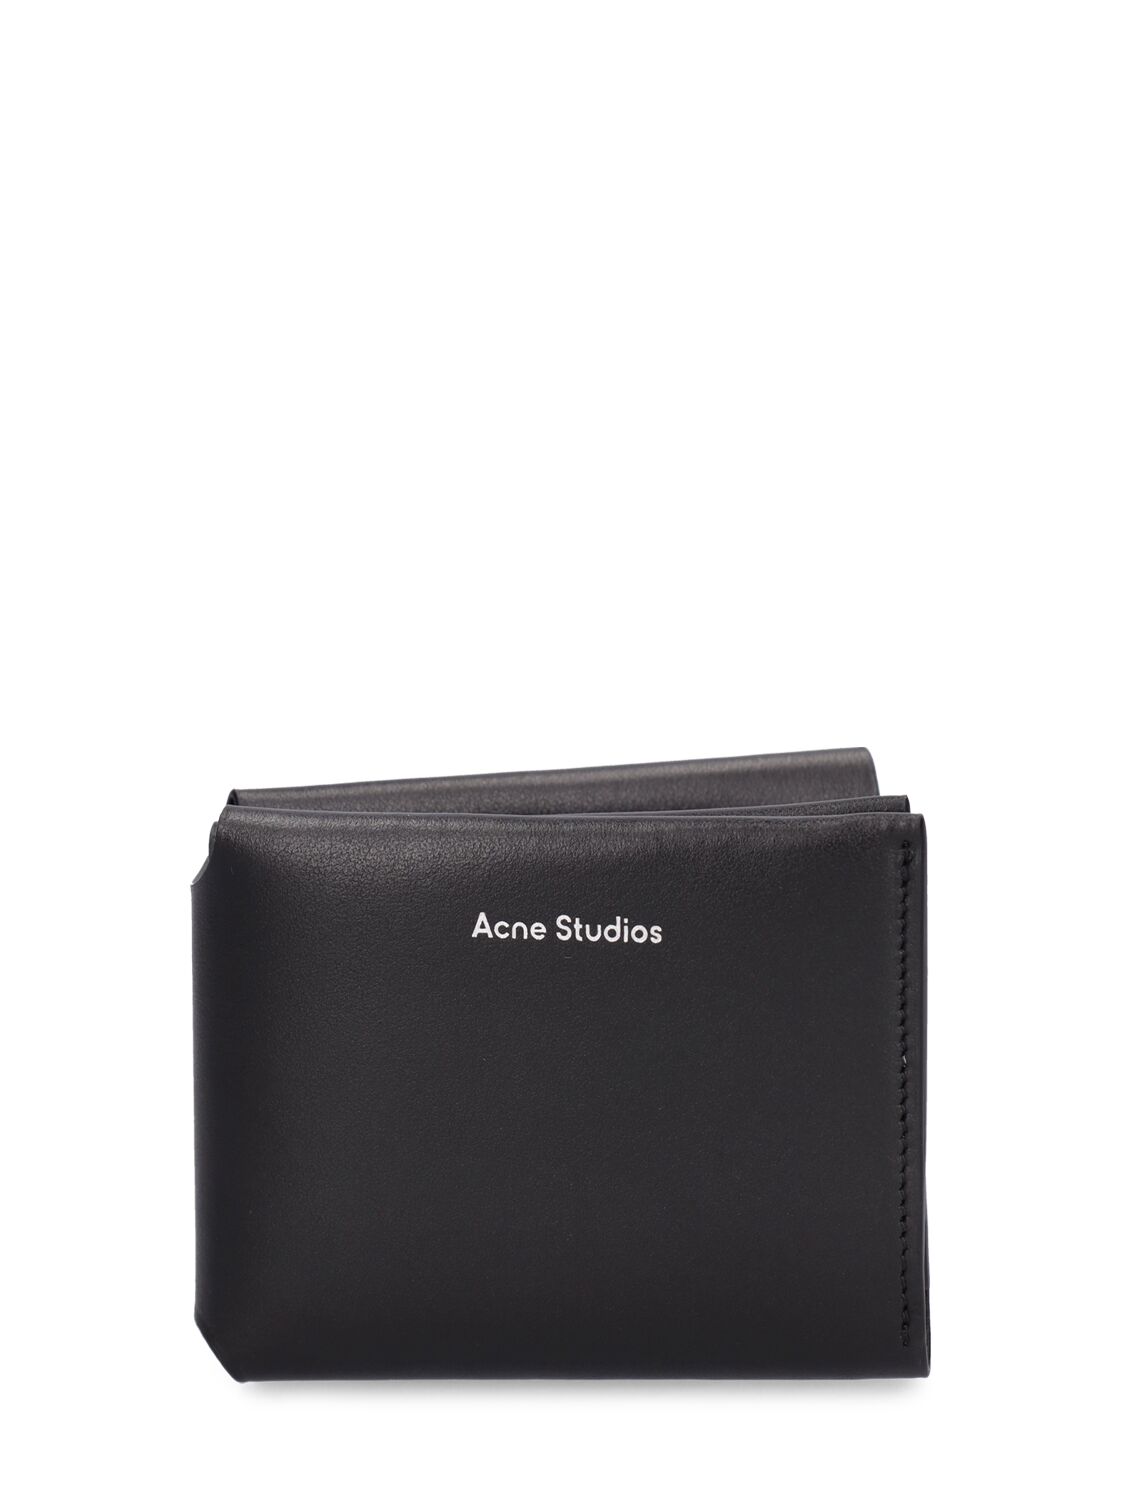 Acne Studios Fold皮革钱包 In Black